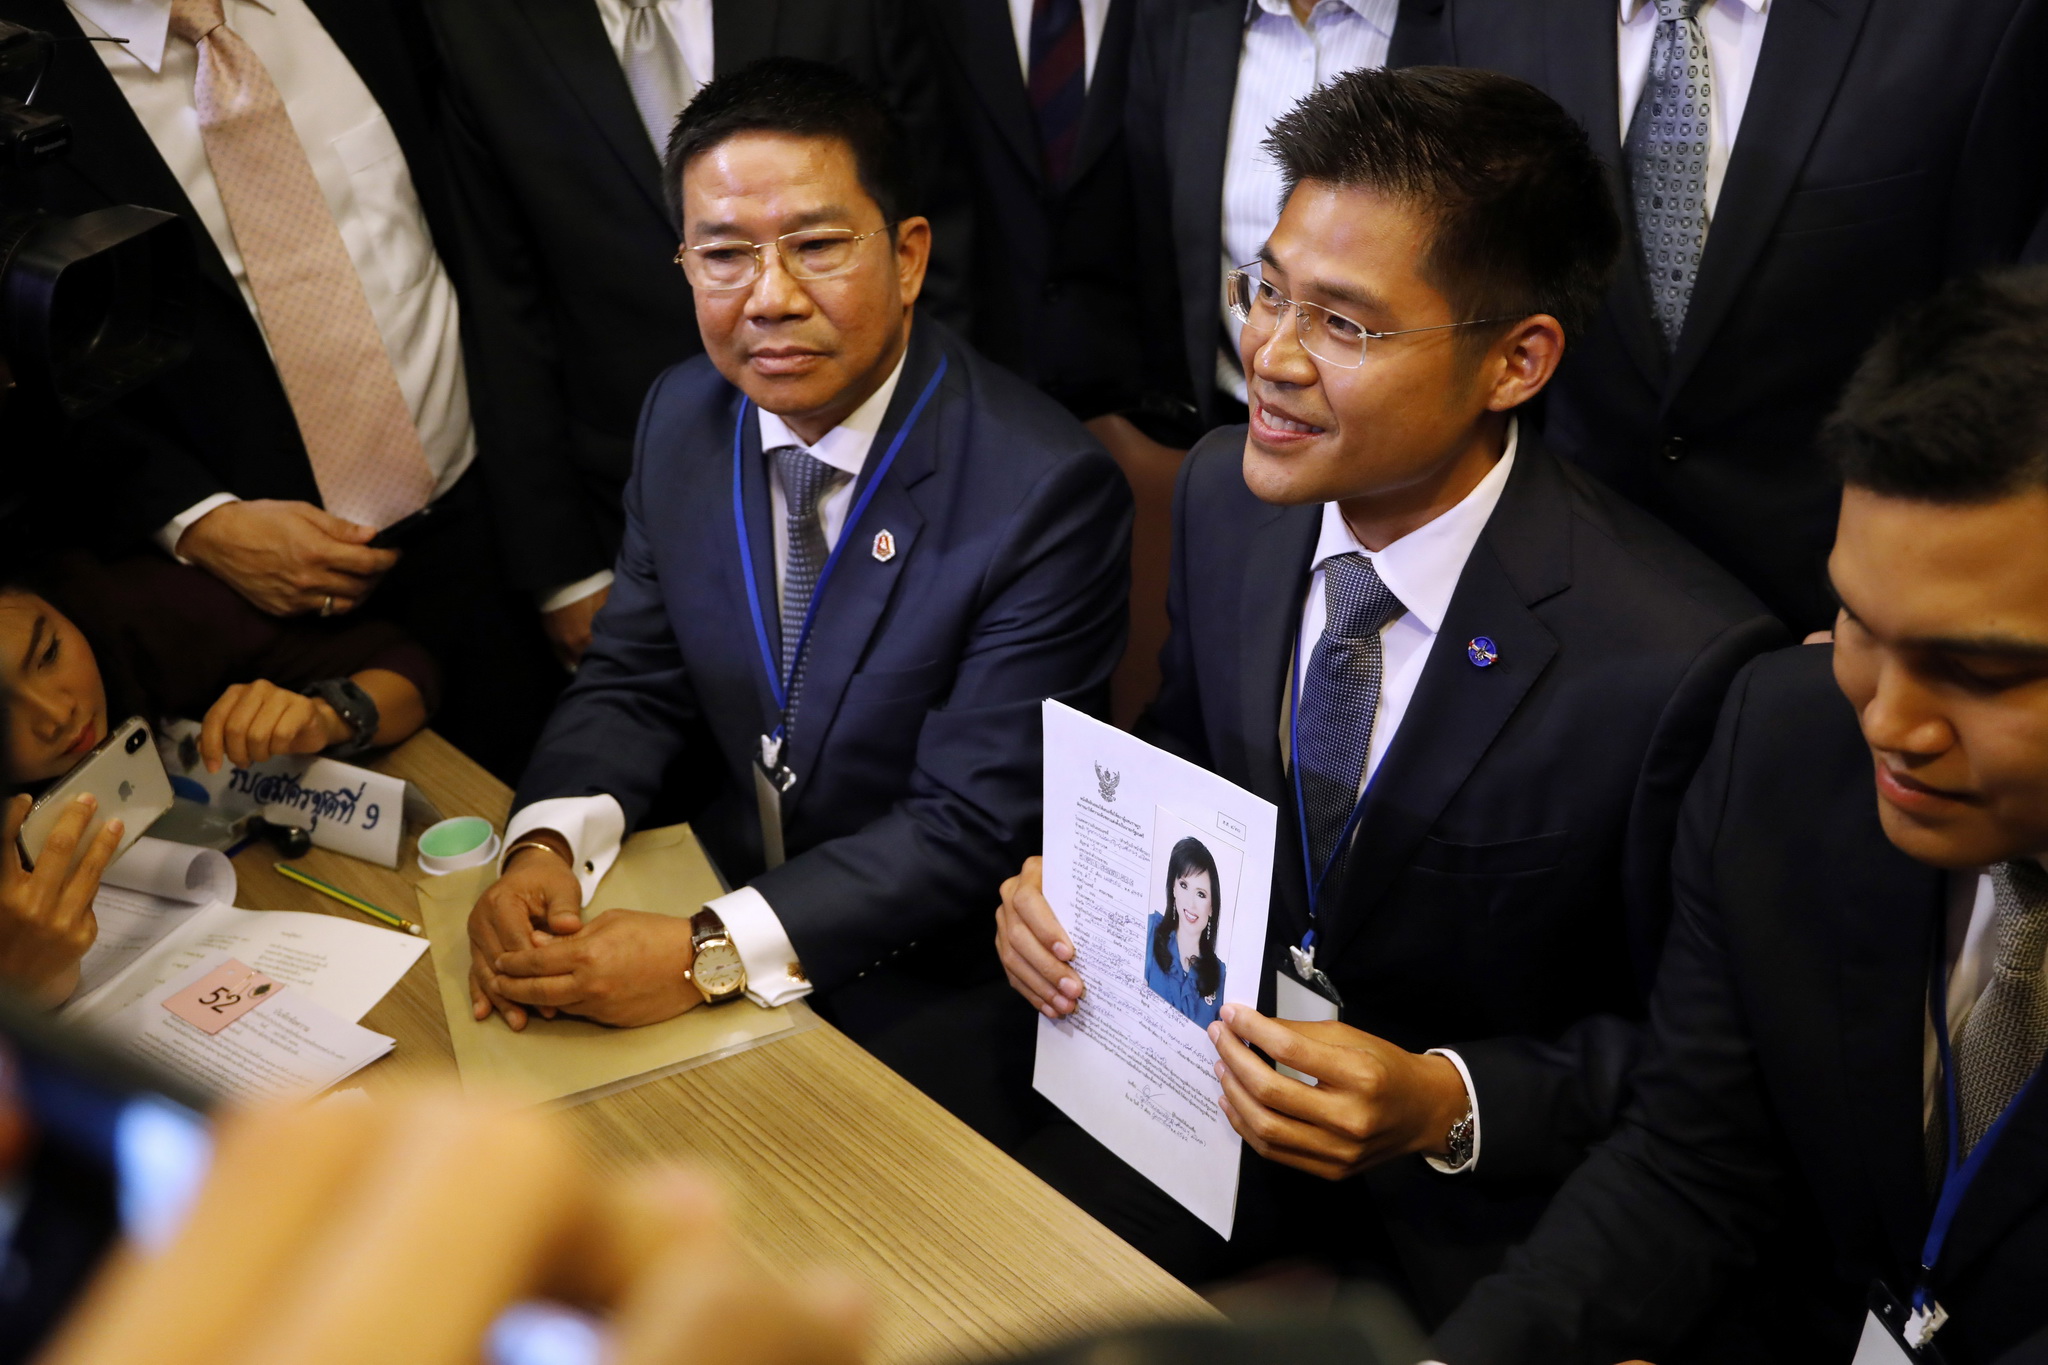 Thành viên đảng Thai Raksa Chart đệ trình hồ sơ của Công chúa Ubolratana ứng cử vị trí Thủ tướng nếu đảng này giành chiến thắng trong cuộc tổng tuyển cử ngày 24/3 tới, tại Bangkok ngày 8/2/2019. (Ảnh: AFP/TTXVN)